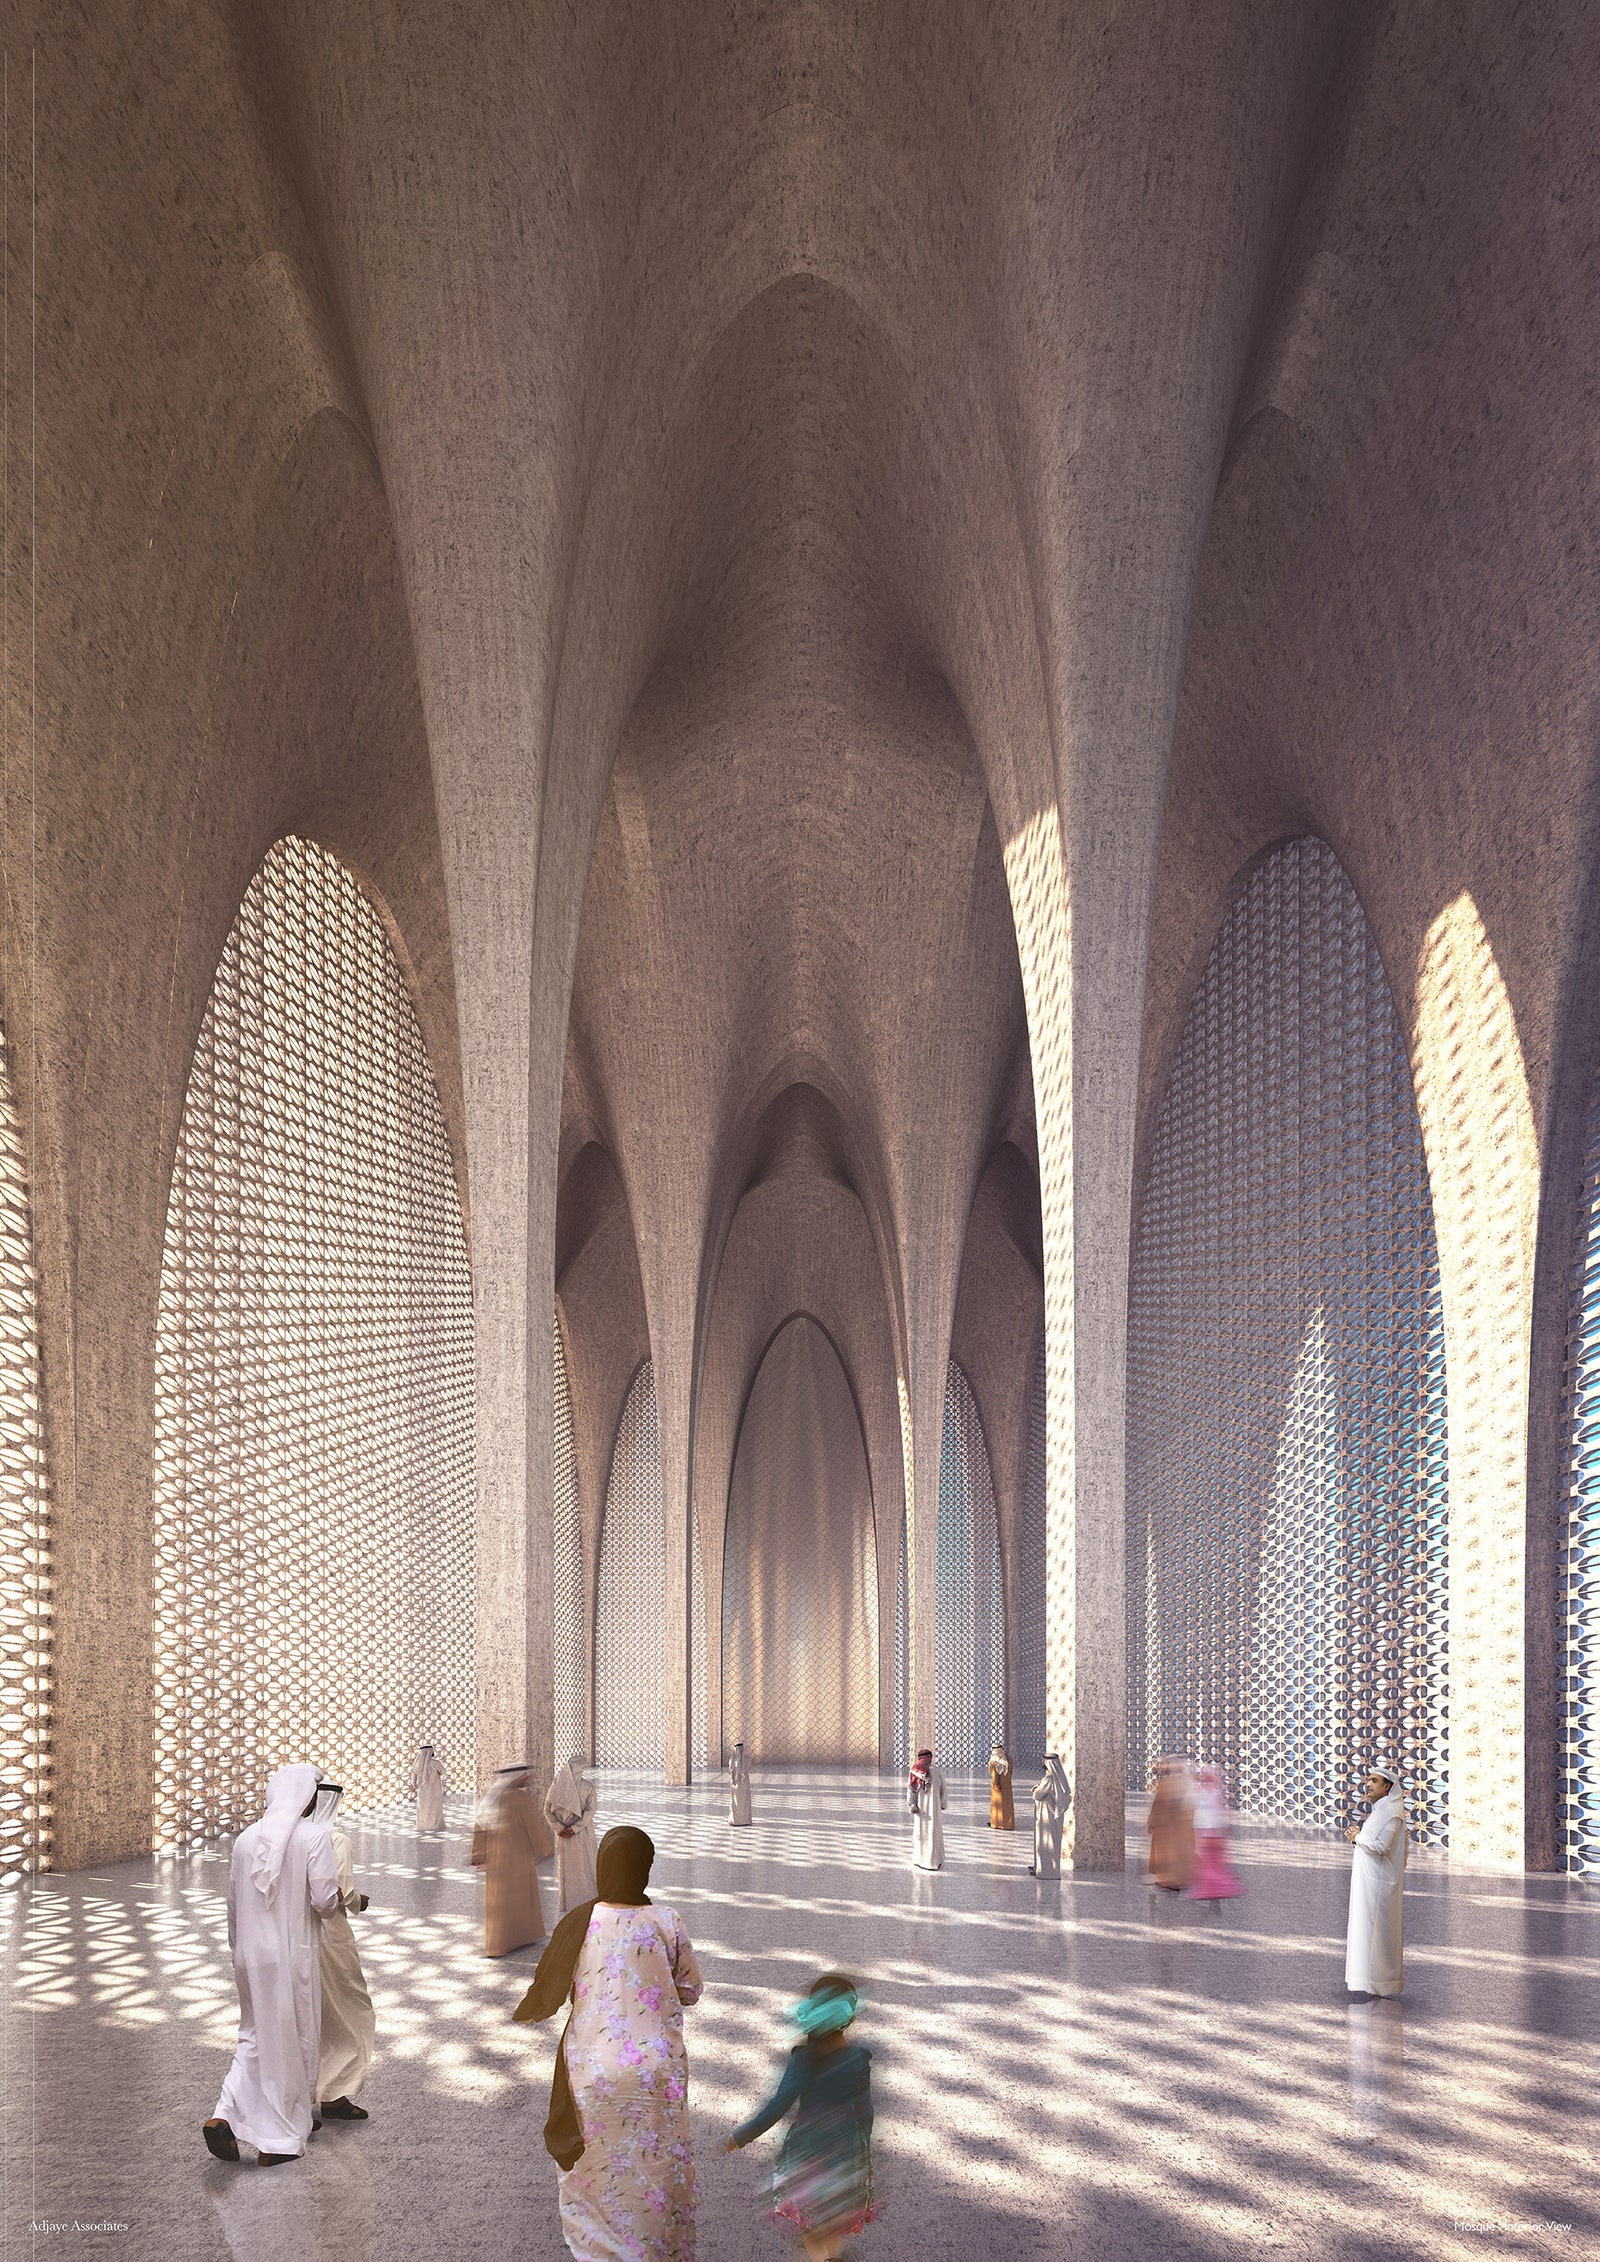 Церковь мечеть и синагога комплекс в АбуДаби по проекту Дэвида Аджайе